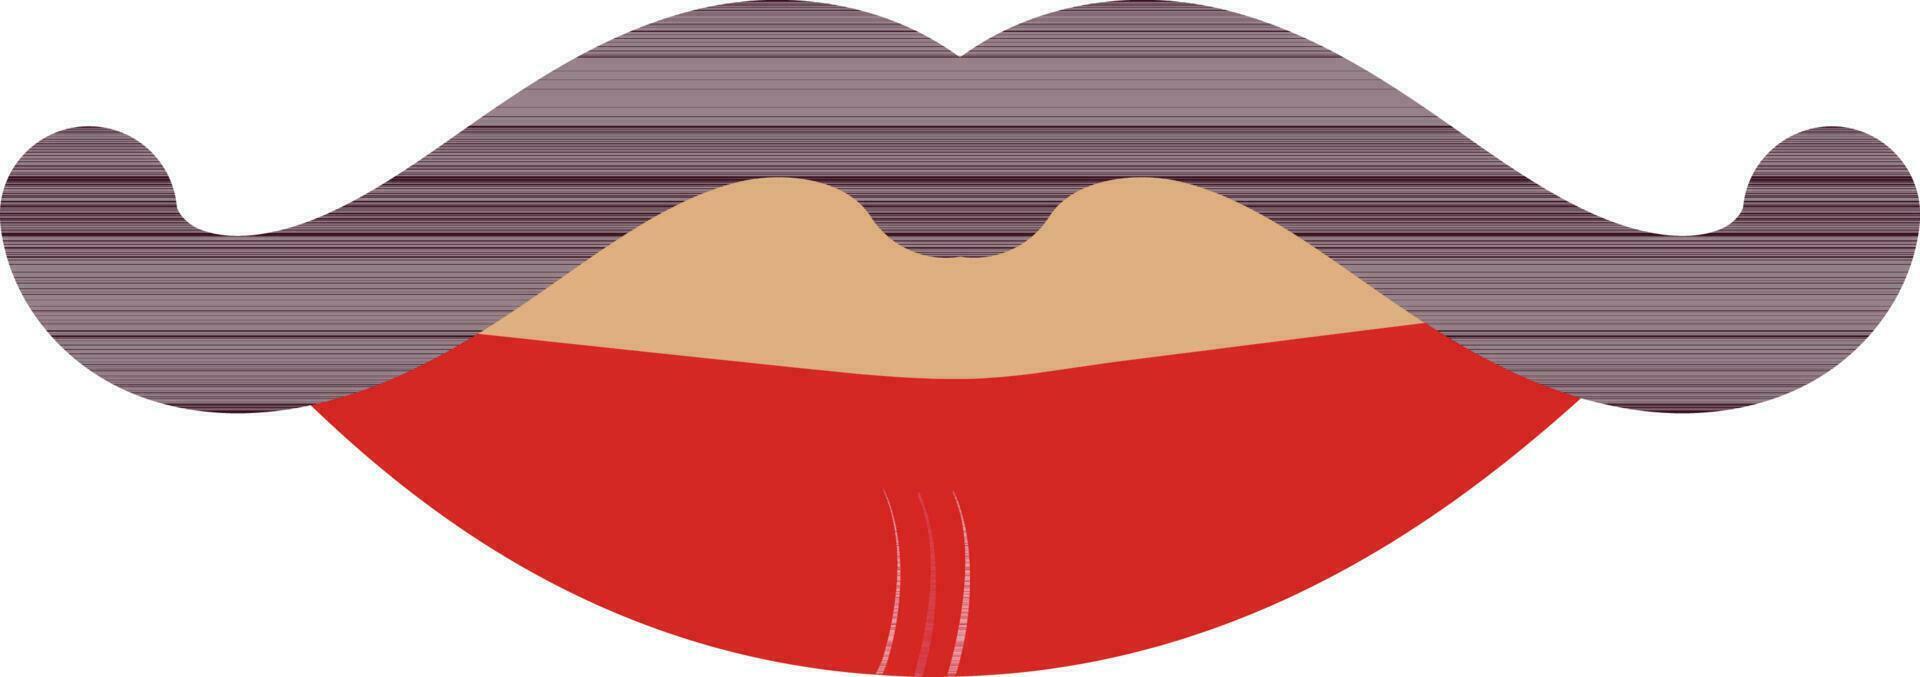 Schnurrbart mit Lippen im Farbe von Mensch Körper. vektor